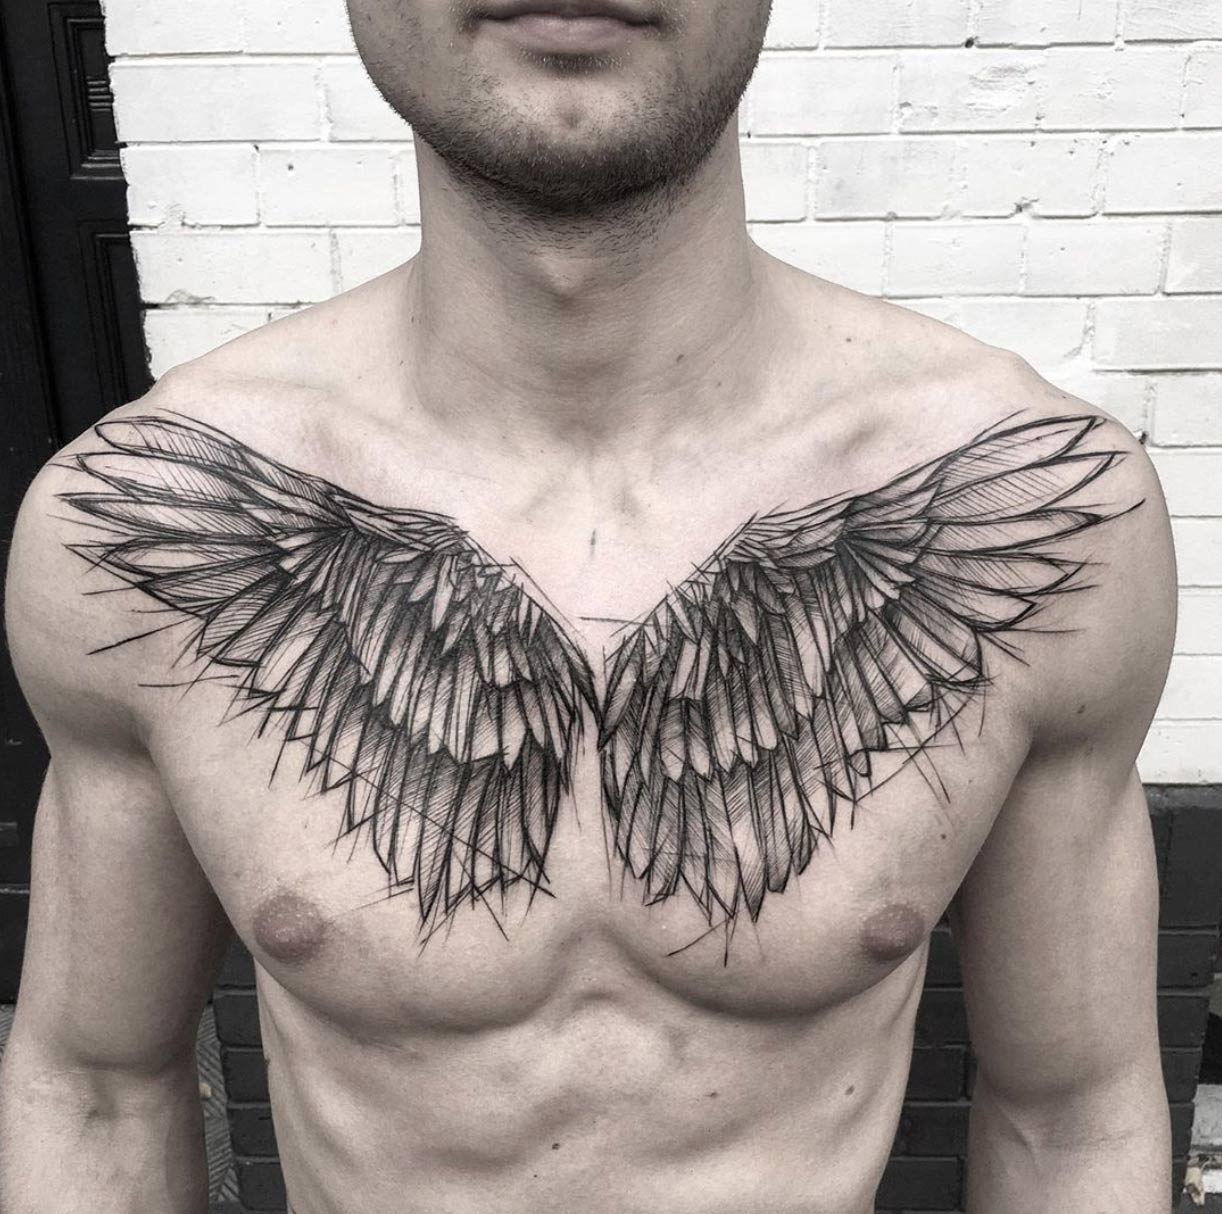 Sketch style wing tattoo by Kamil Mokot